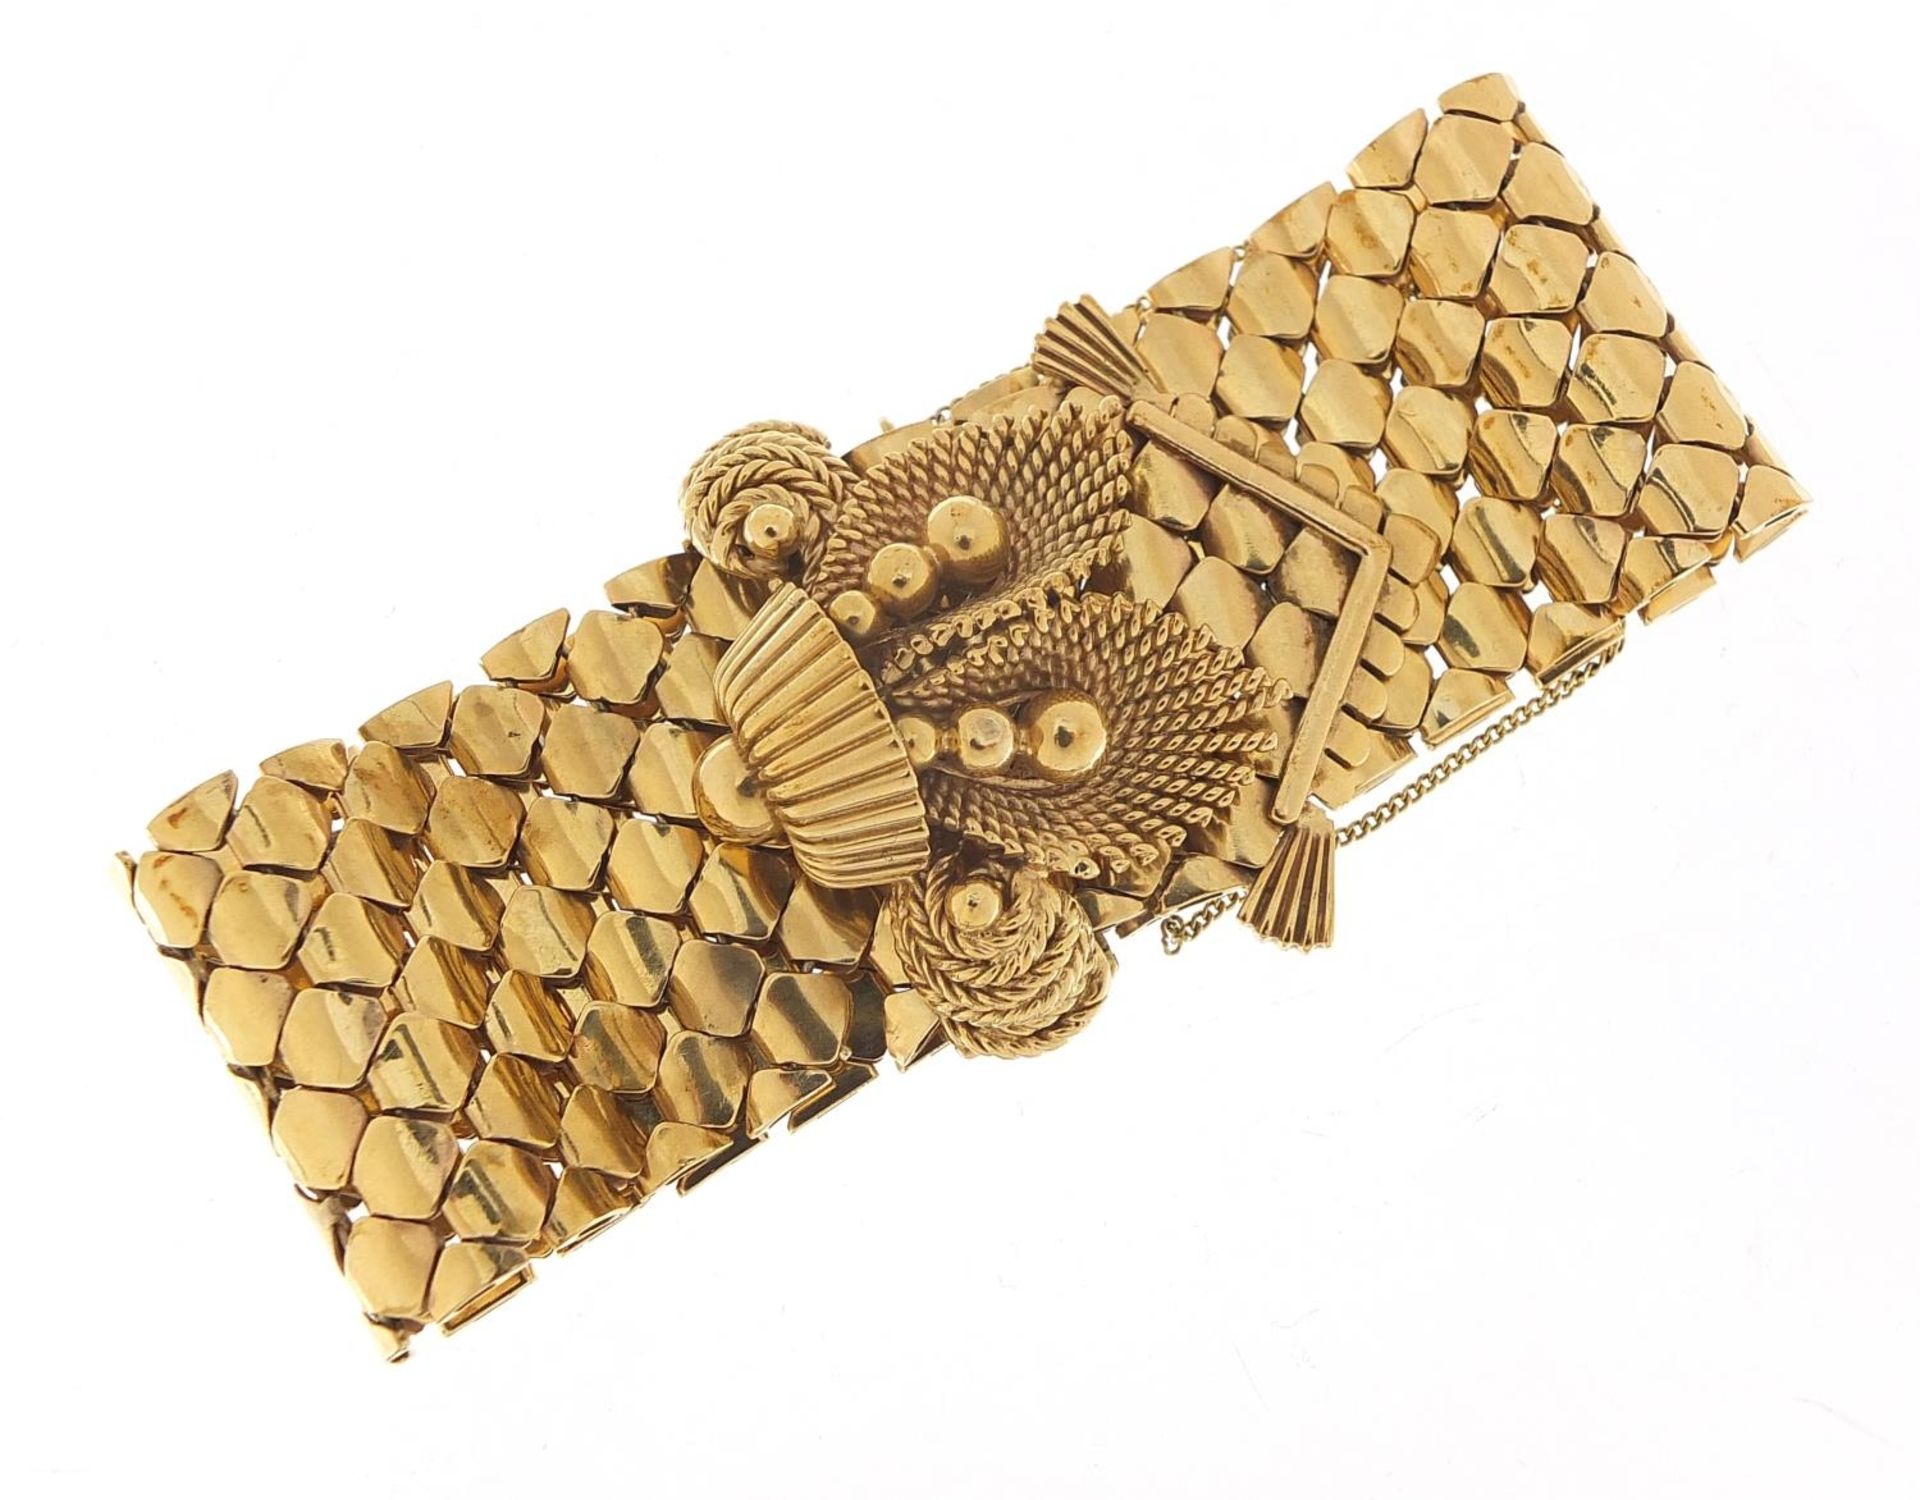 Large 9ct gold belt and buckle design bracelet with floral basket design clasp, S & SLD maker's